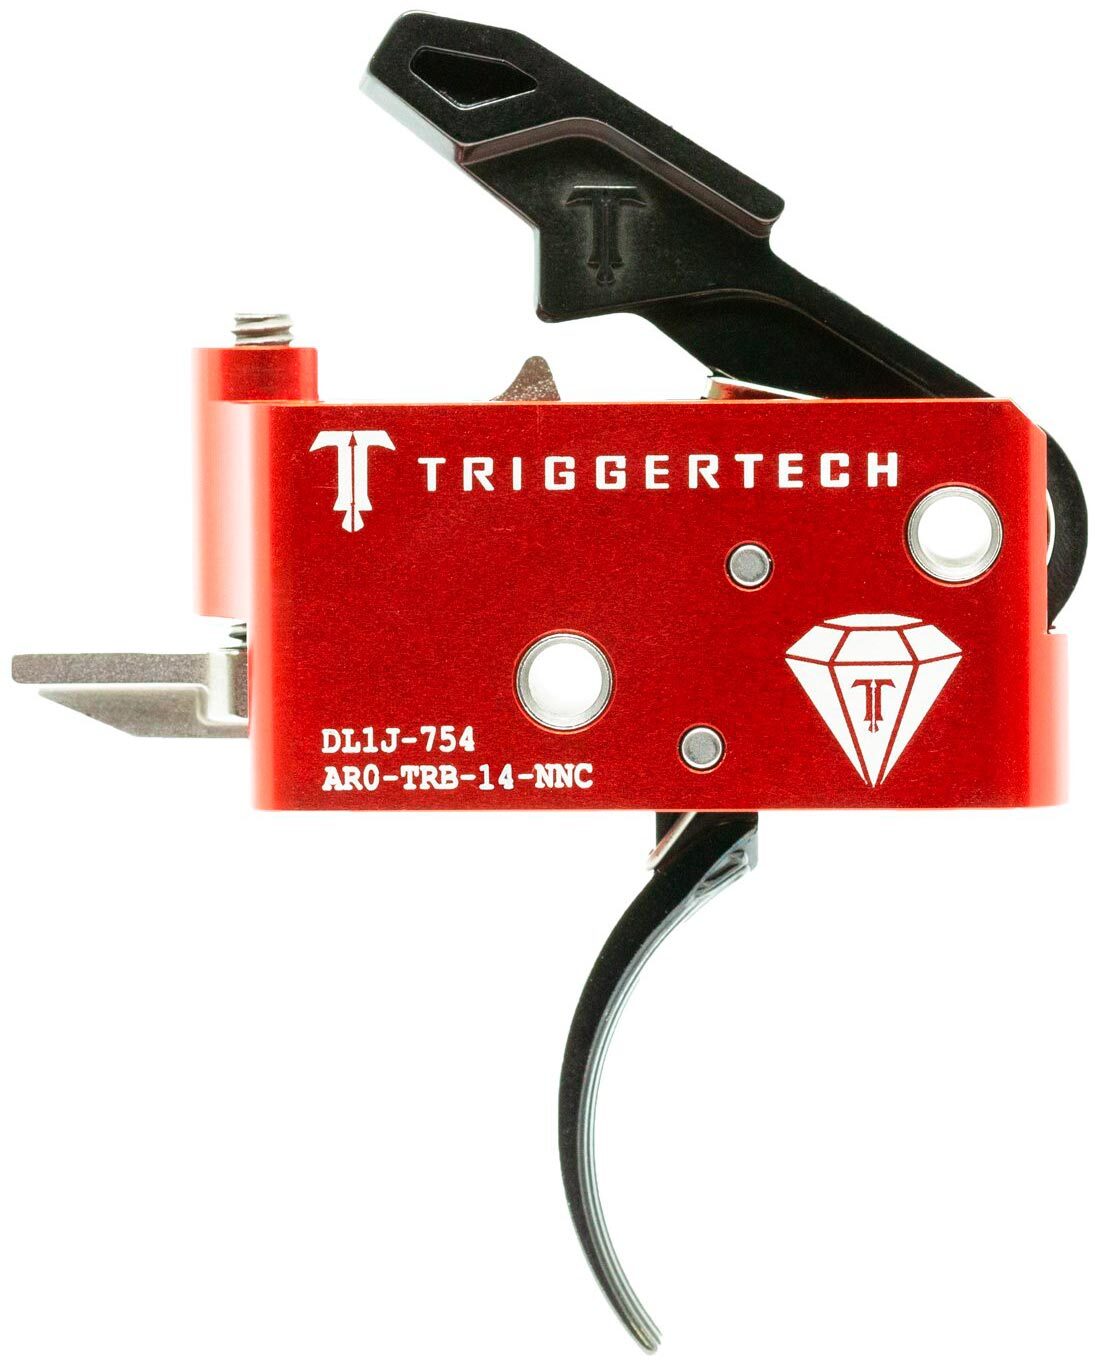 УСМ TriggerTech Diamond Curved для AR15 регулируемый двухступенчатый